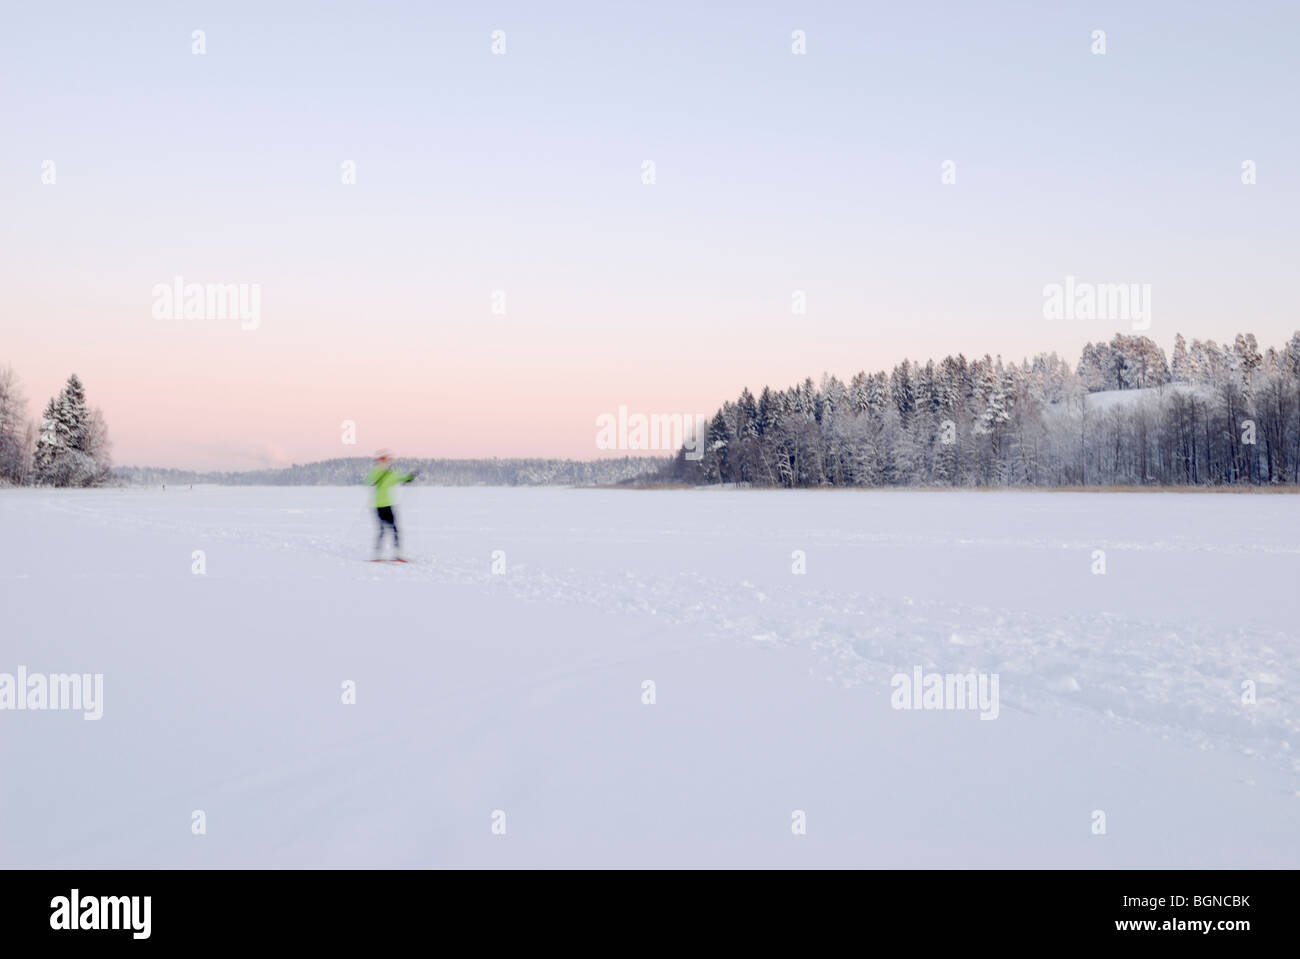 Moto sciatore sfocata sul lago ghiacciato, Espoo, Finlandia Foto Stock